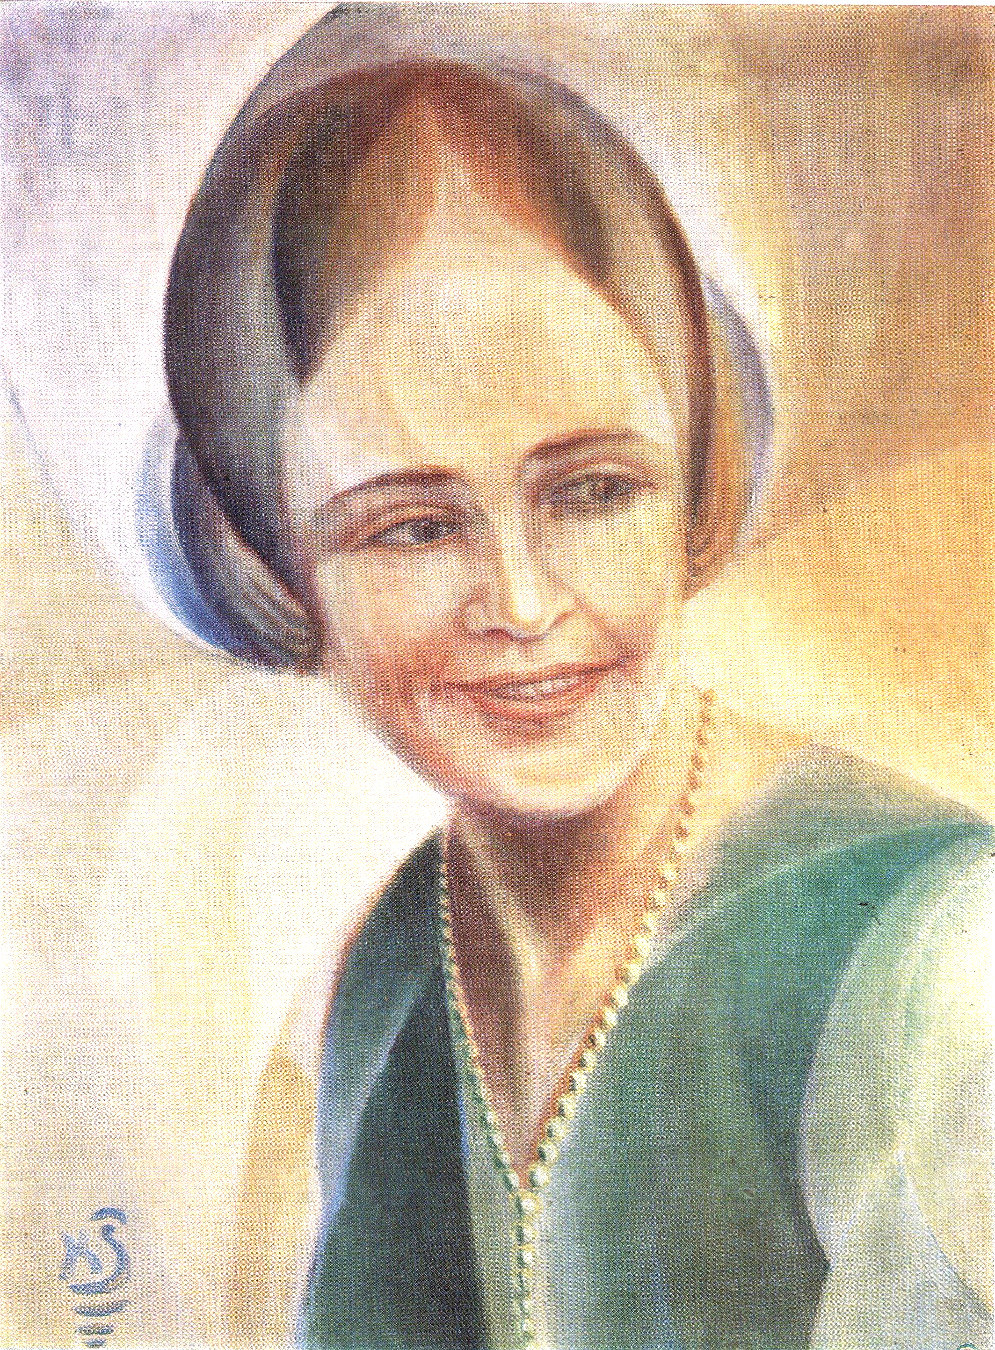    Казис Шимонис, живопись и книжная графика | Портрет Т. Вайчюнене. 1927